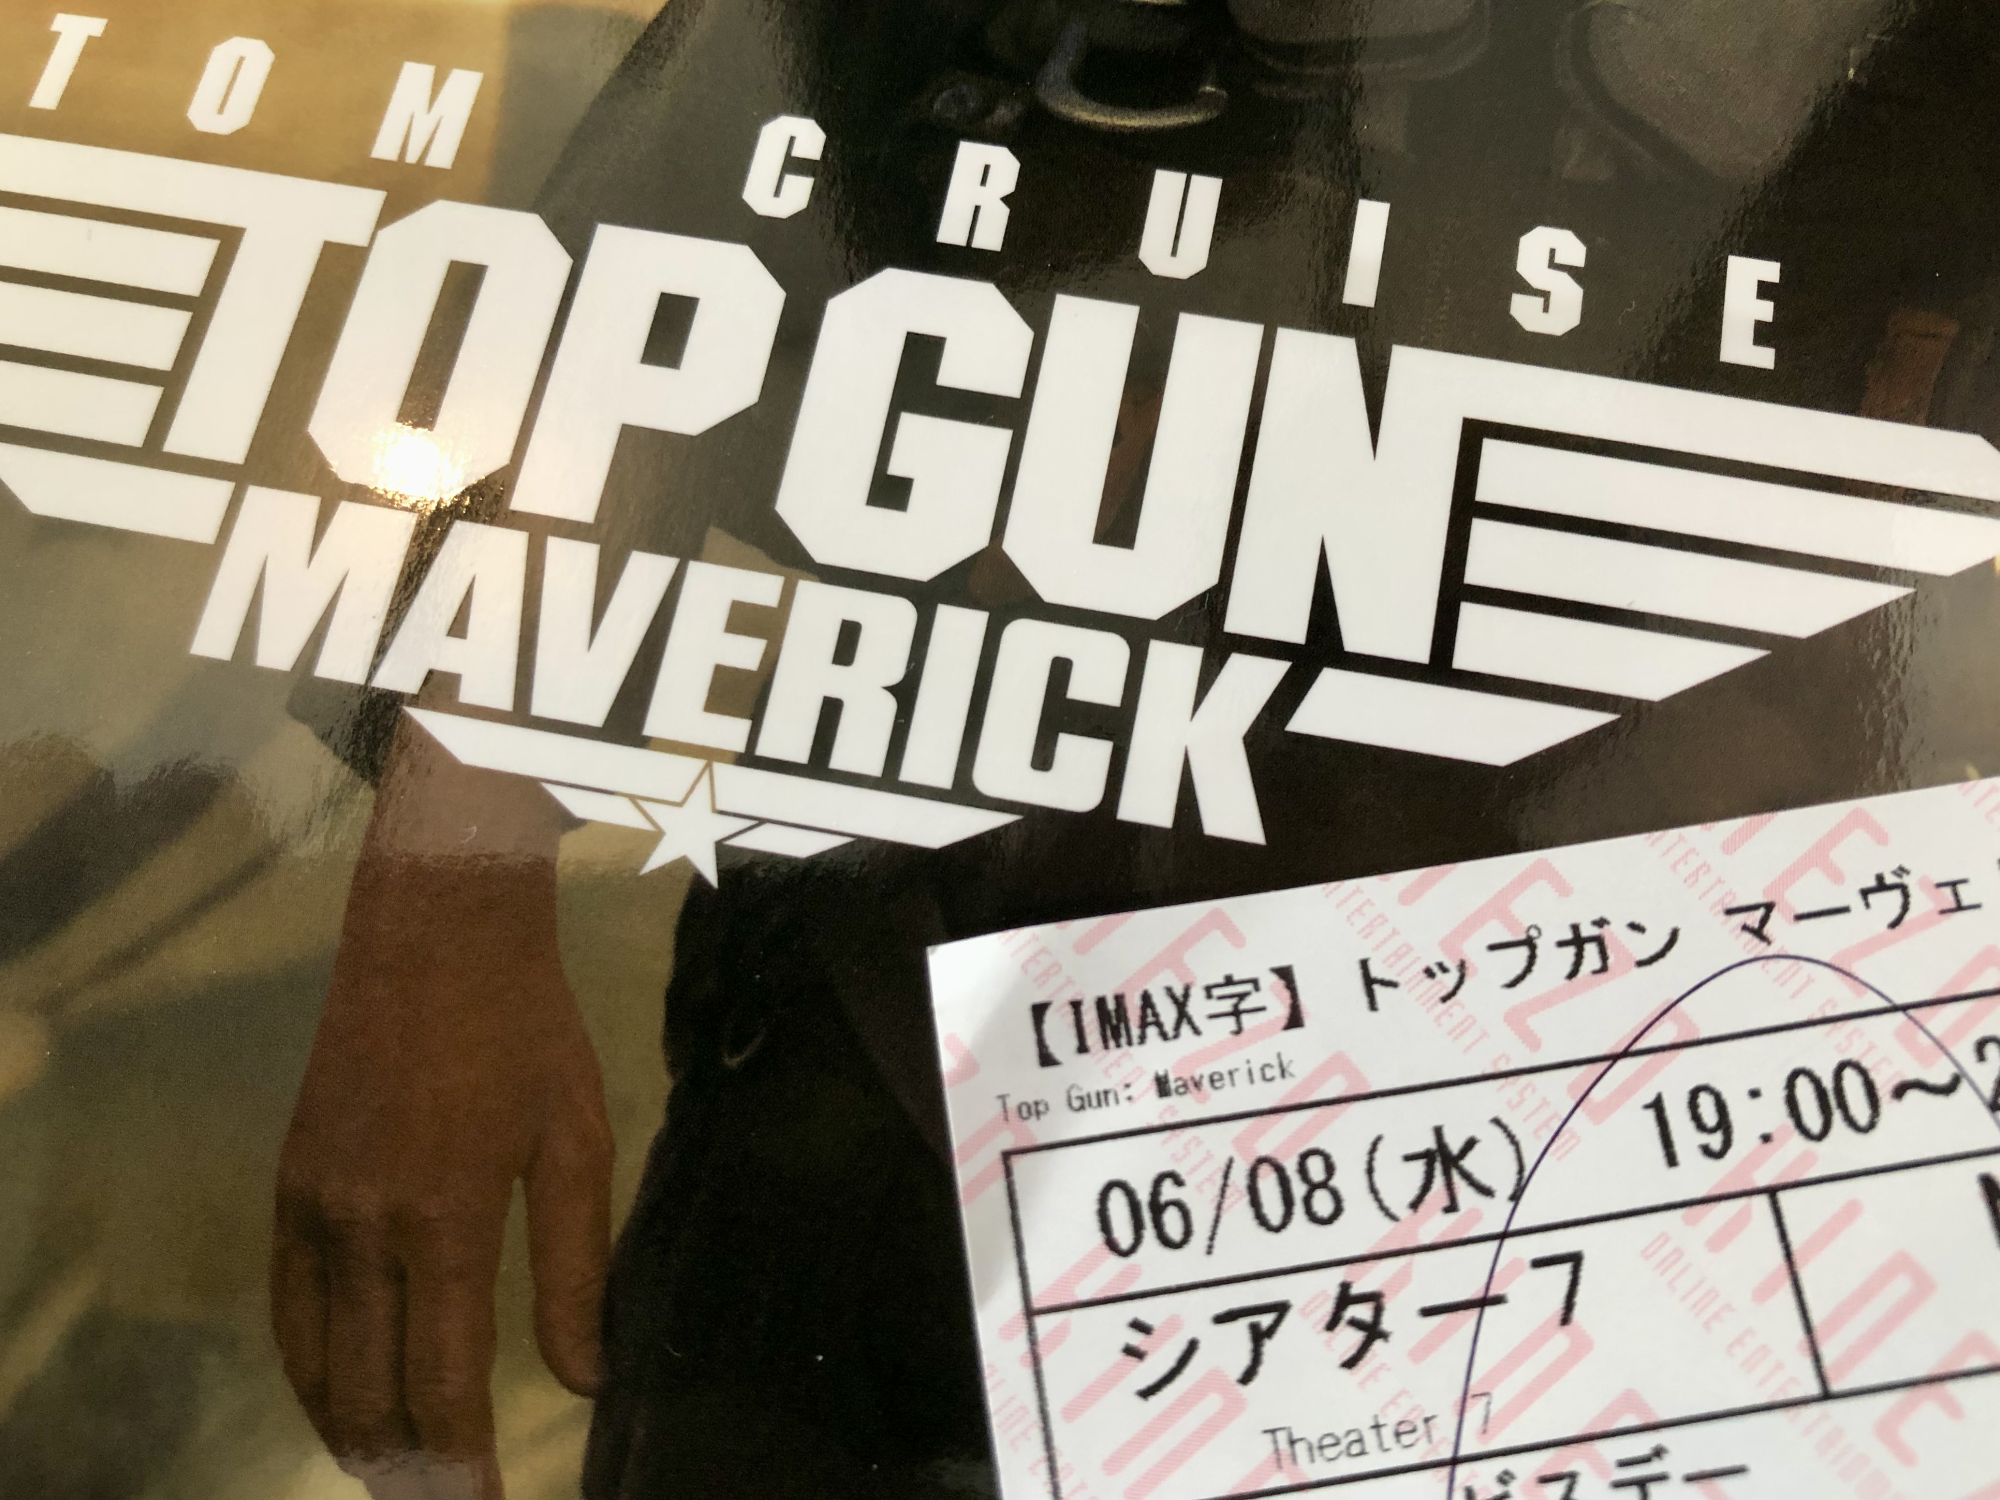 Top Gun: Maverickの半券とパンフレット